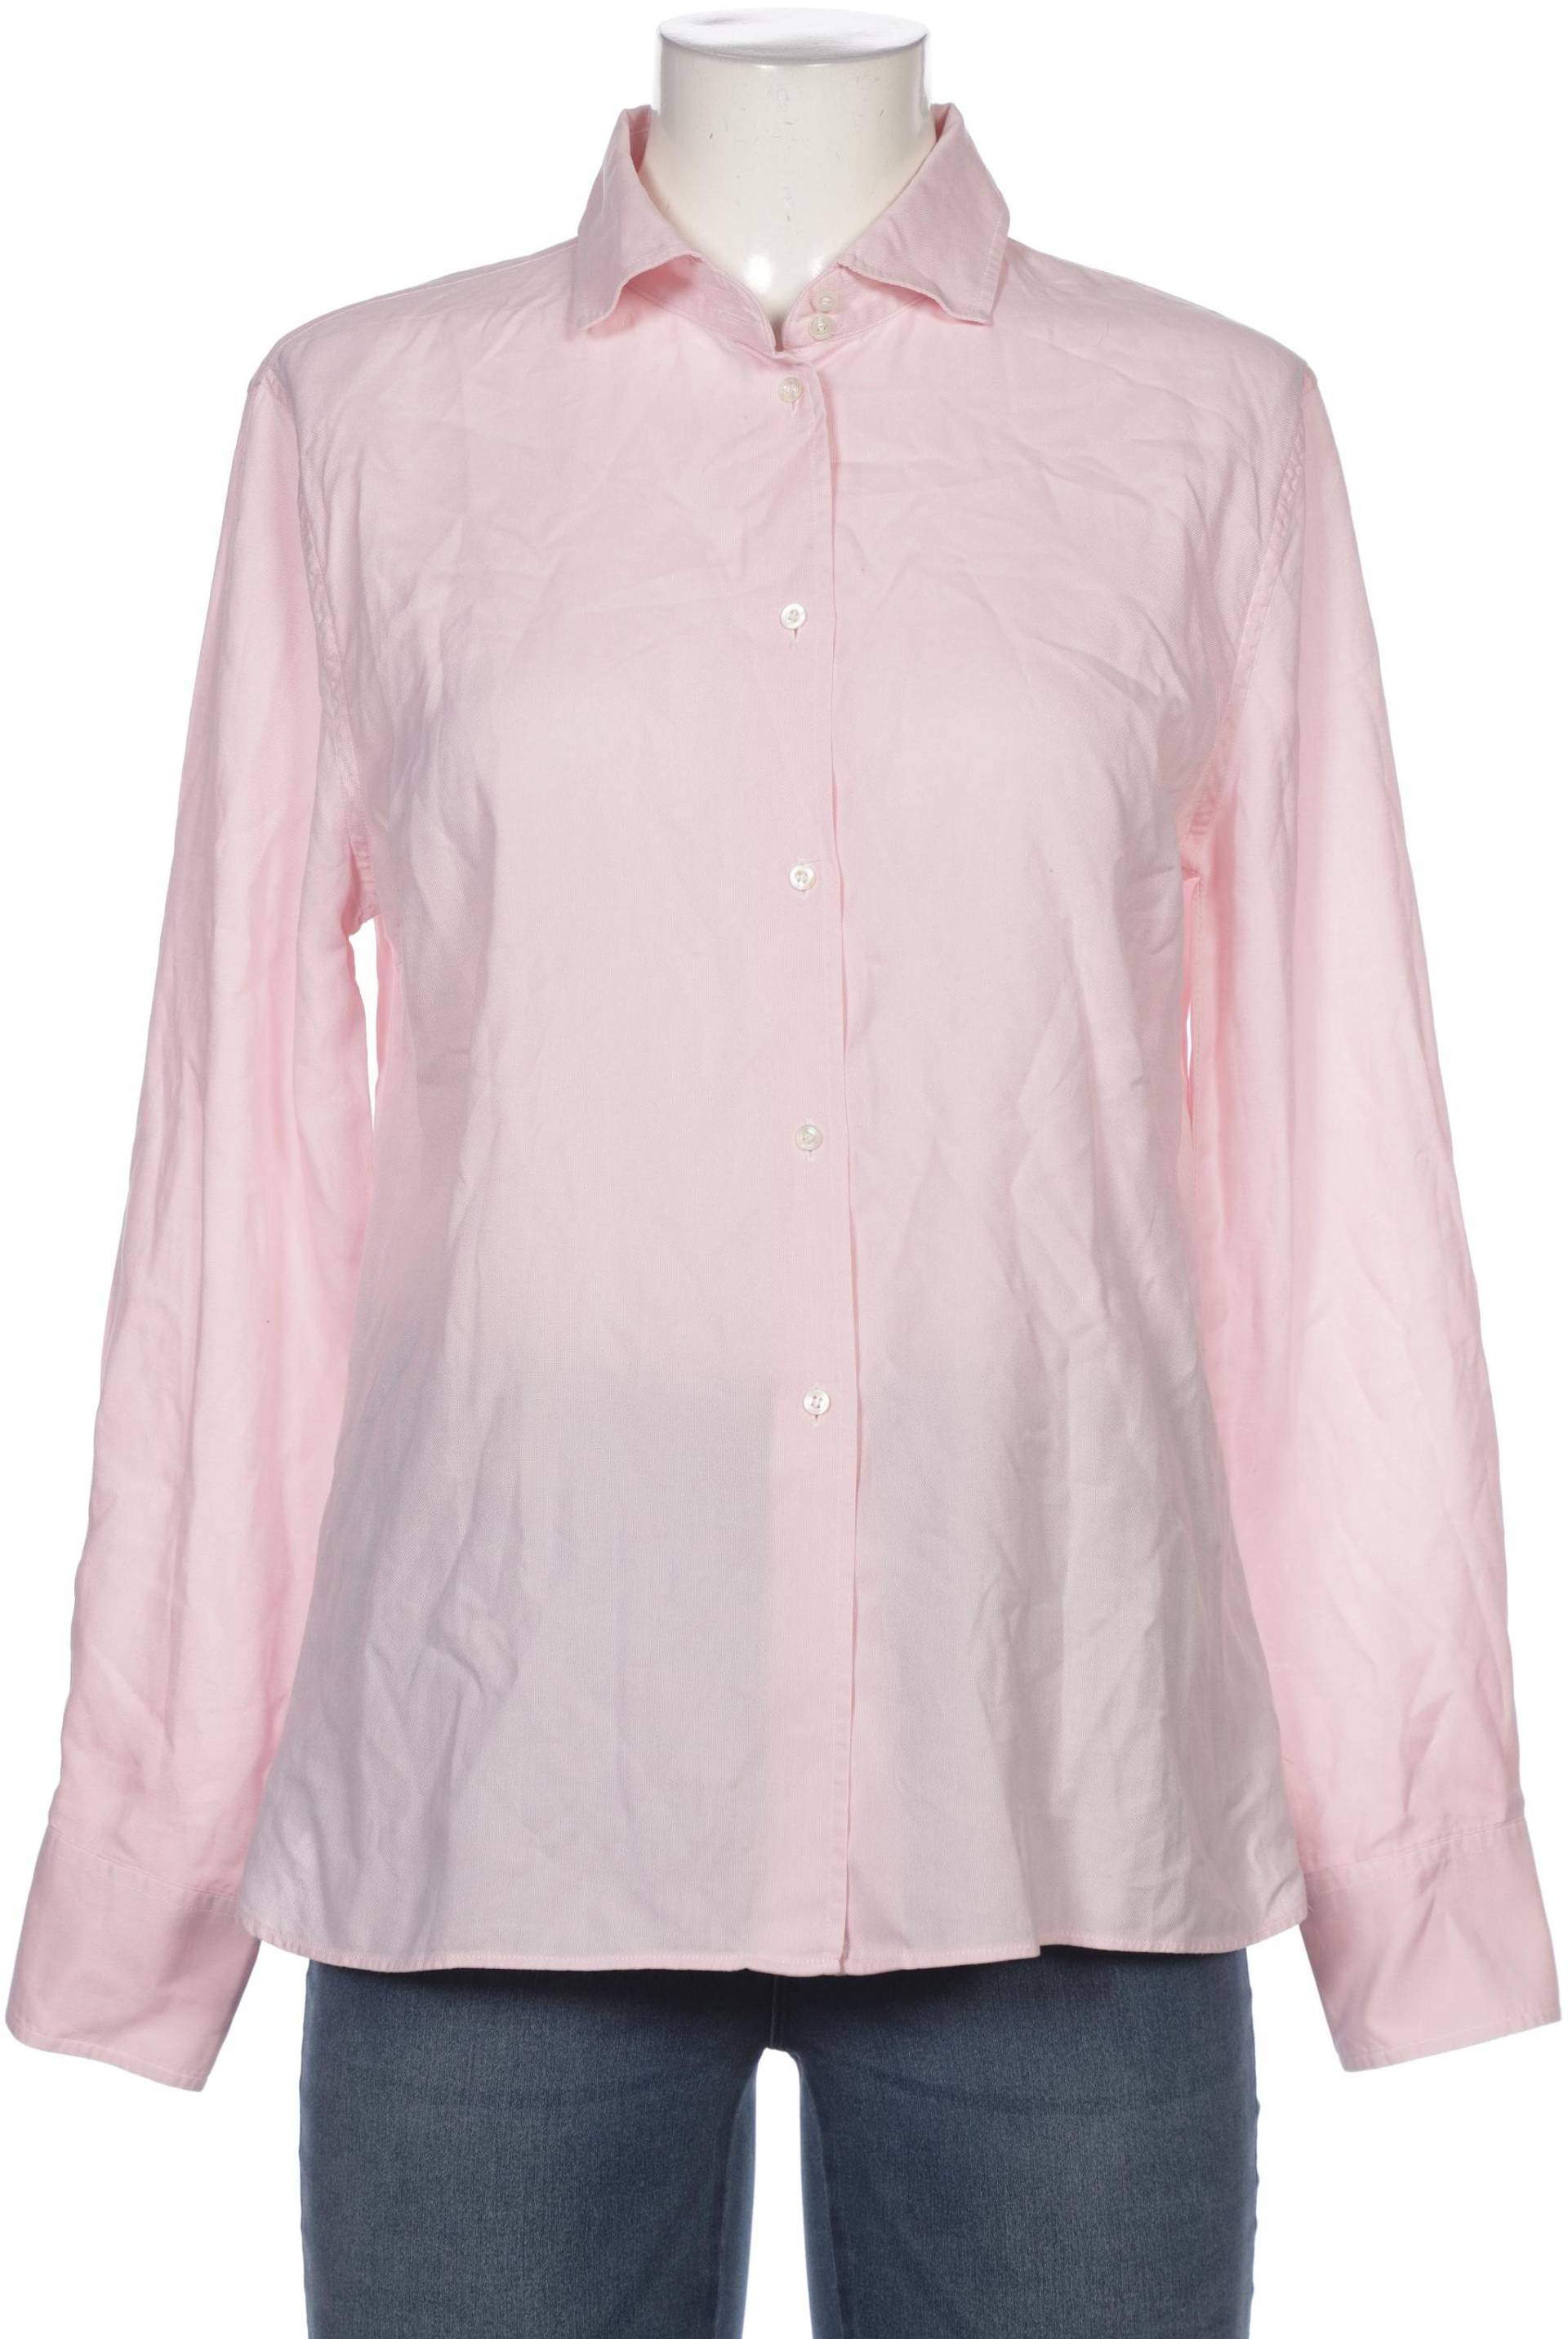 Bogner Damen Bluse, pink, Gr. 42 von Bogner